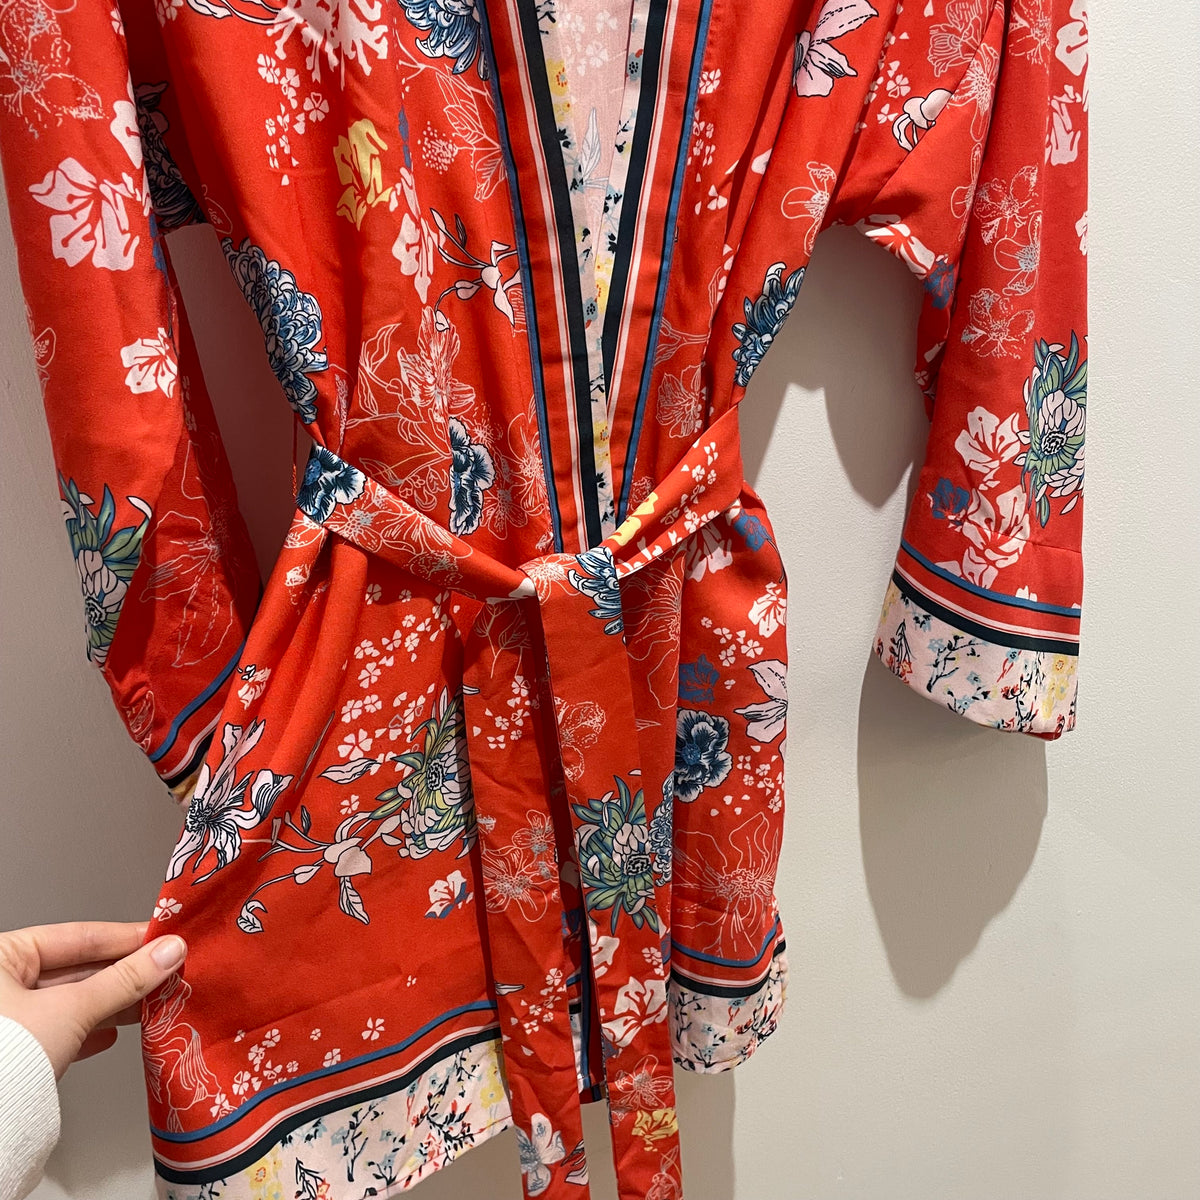 Sugarlane kimono dressing gown Oranges Size o/s